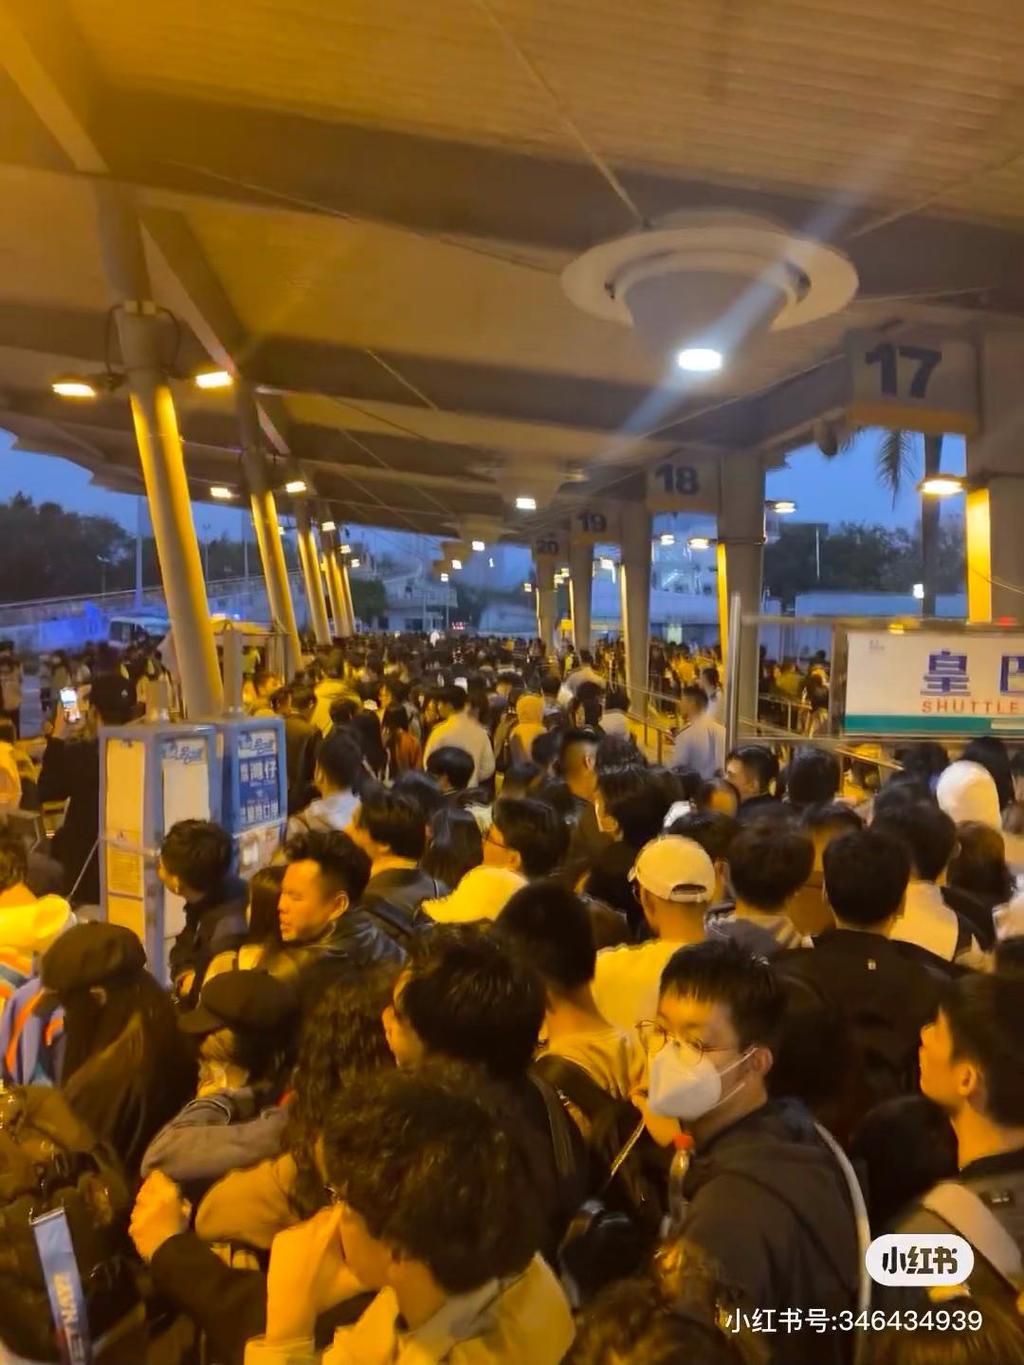 皇岗边检站执勤民警就查验入境深圳旅客近4.5万人次。小红书图片